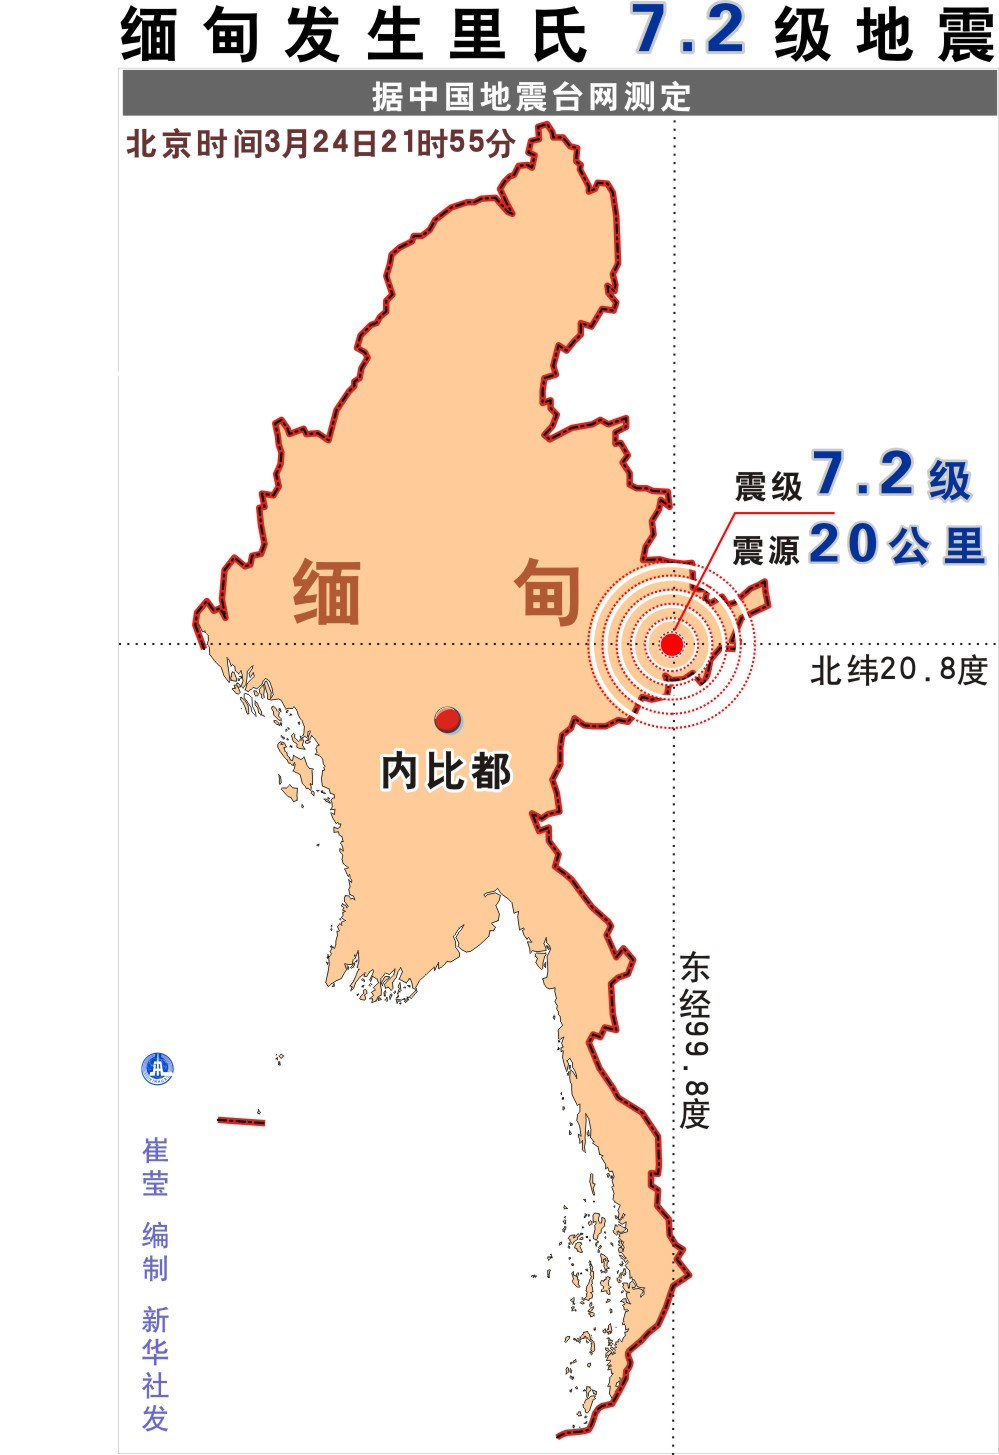 高清:缅甸发生里氏7.2级地震图表-搜狐滚动